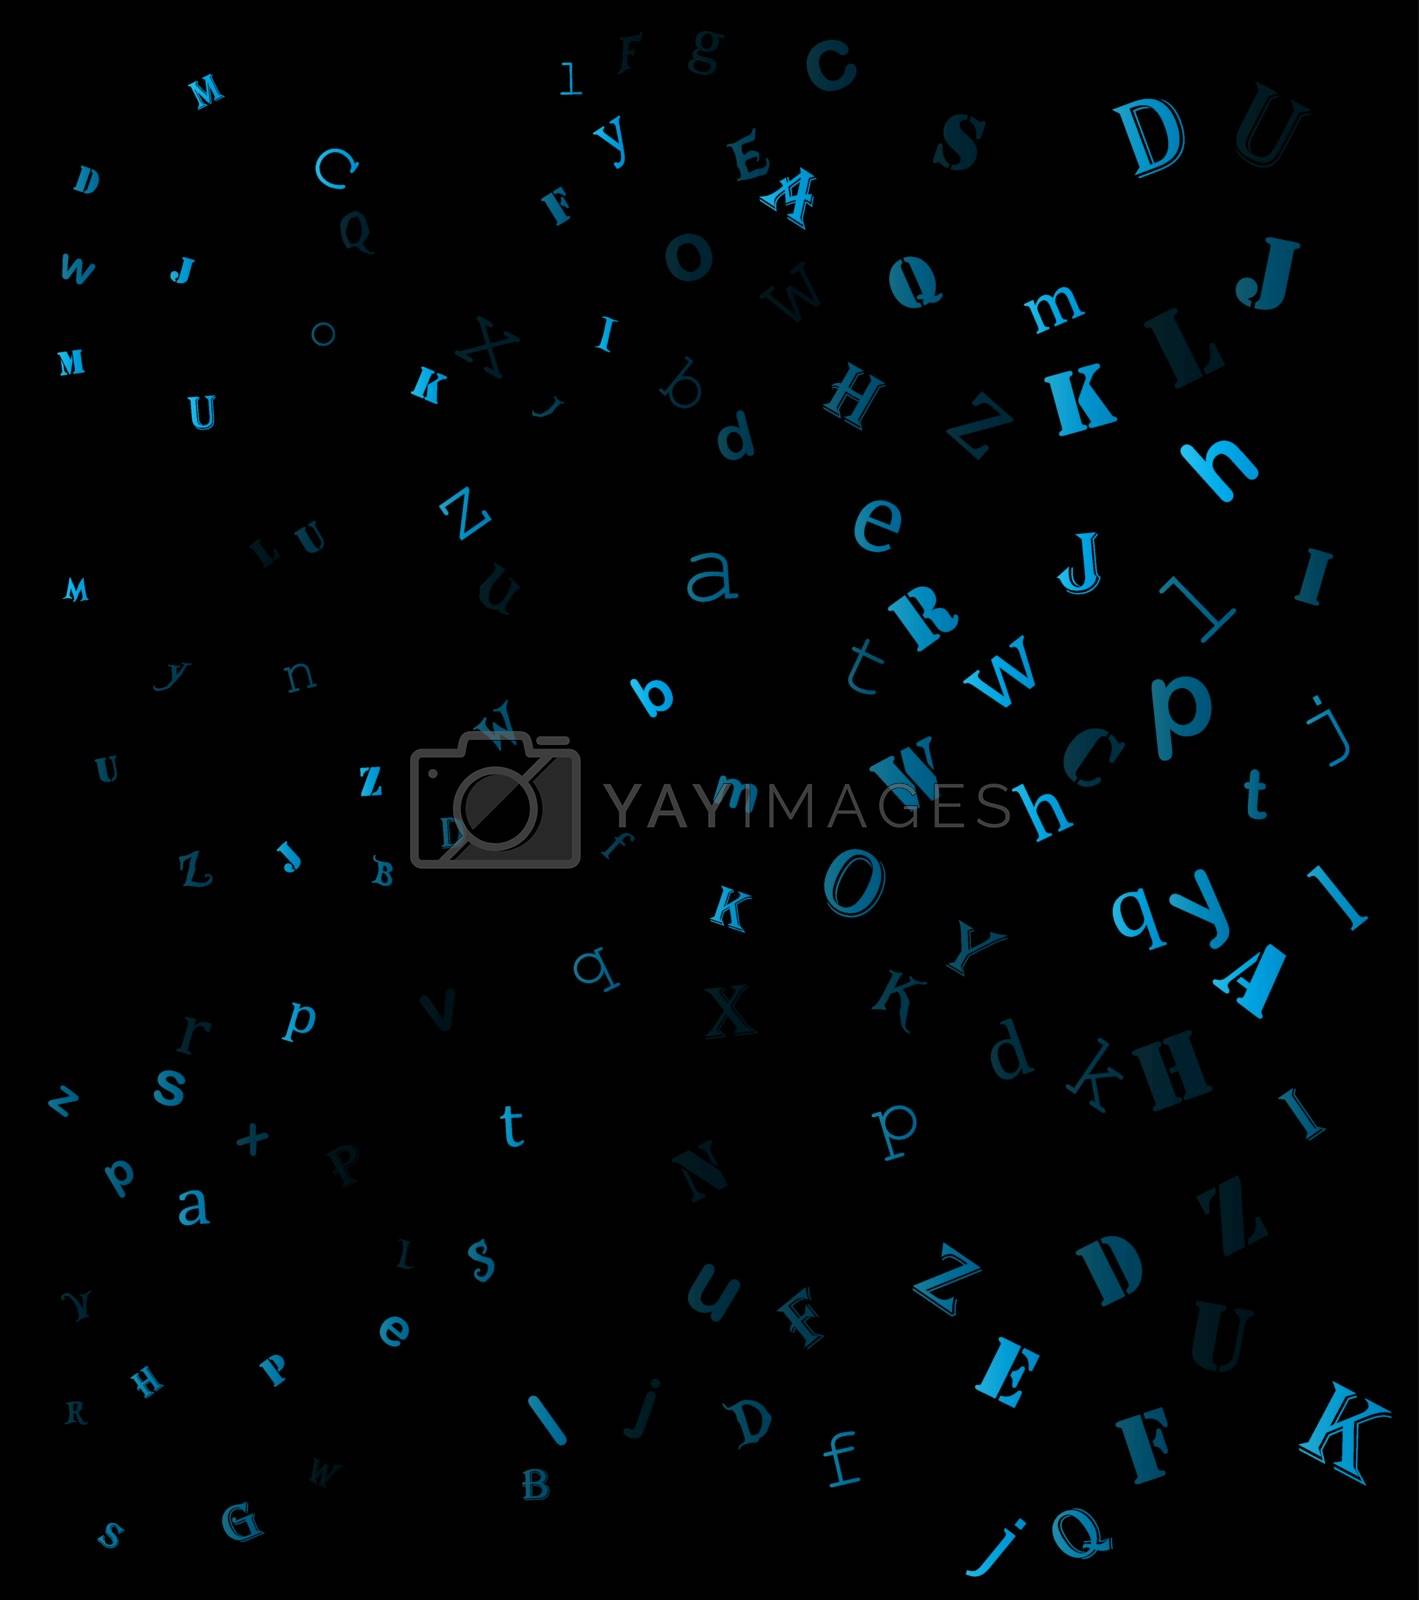 Royalty free image of falling random letters, alphabet beautiful background design  by wektorygrafika